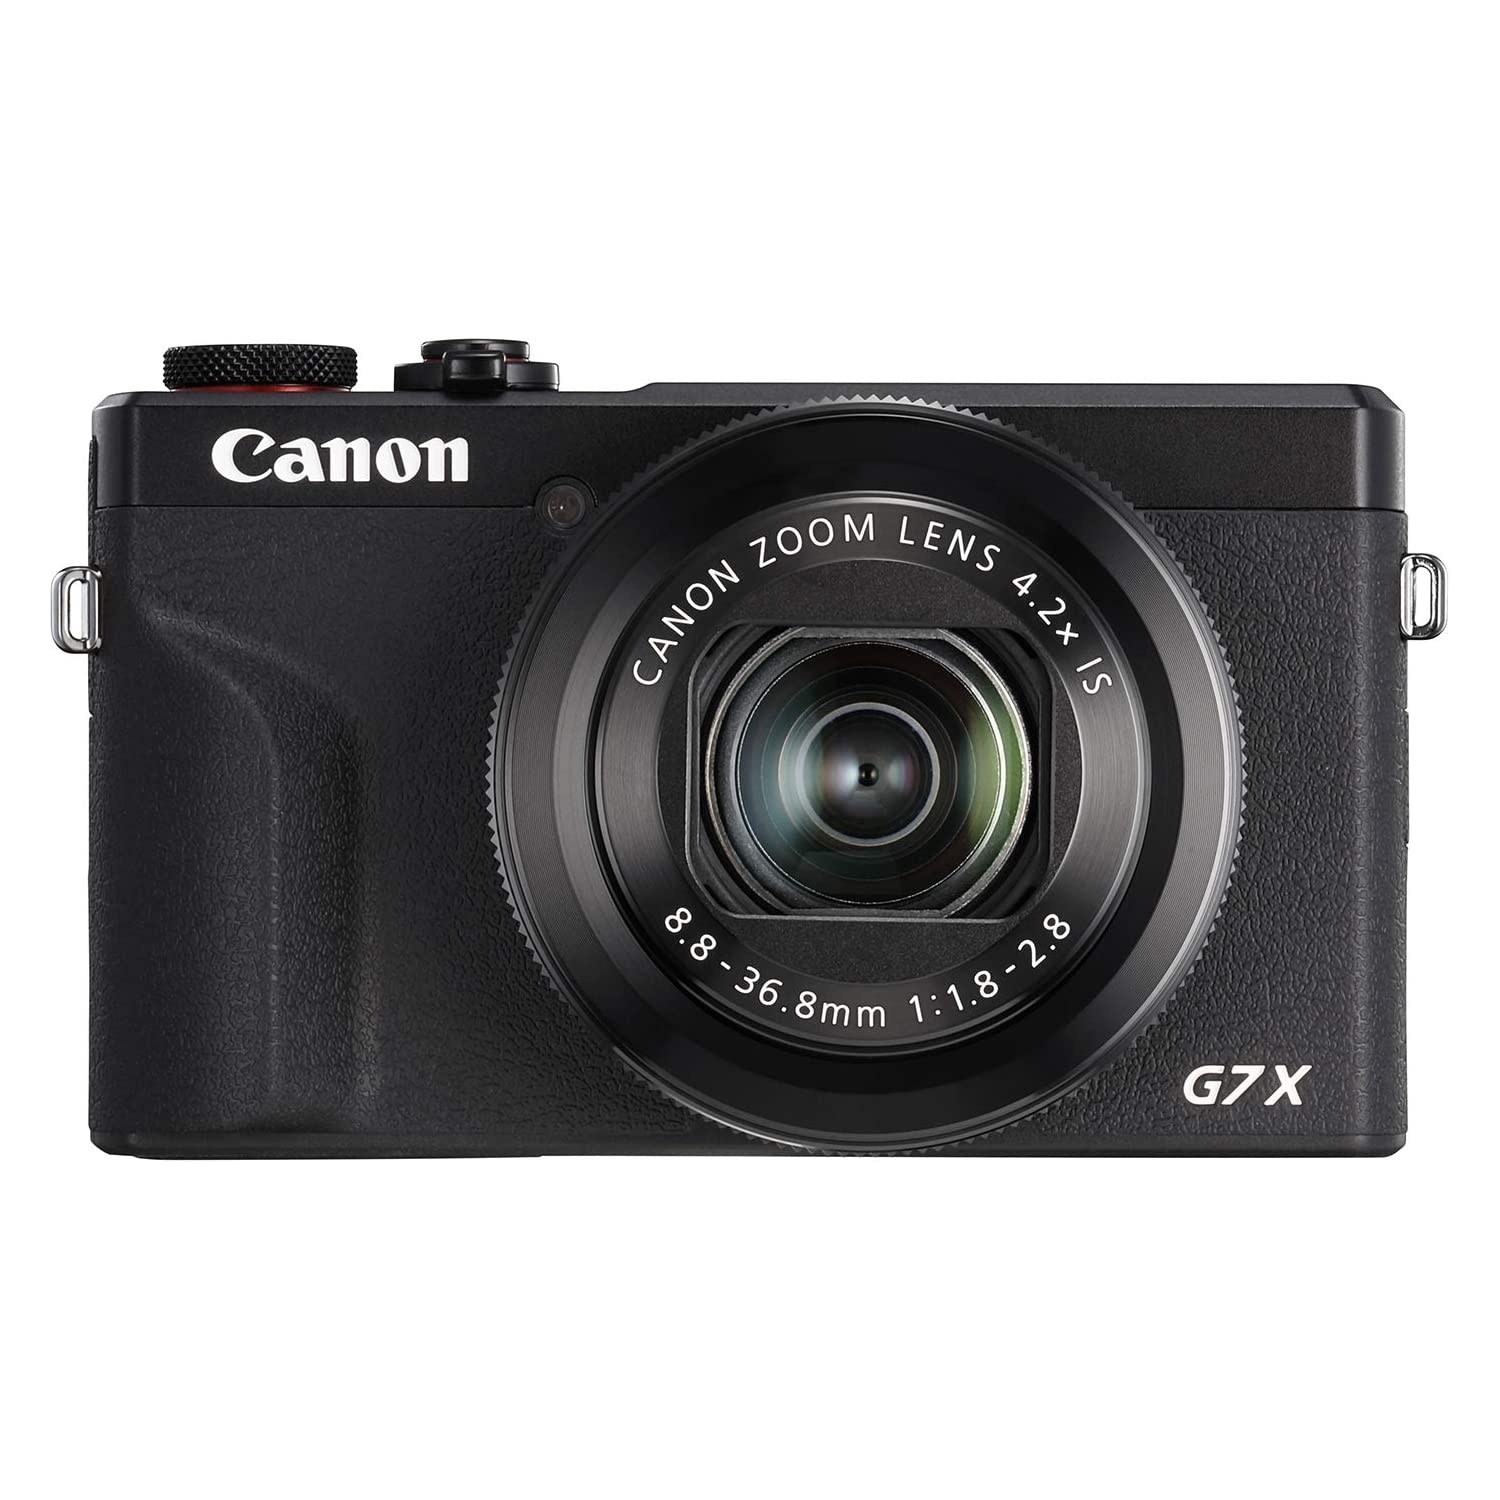 Canon PowerShot G7X Mark III (Black)- Brand New